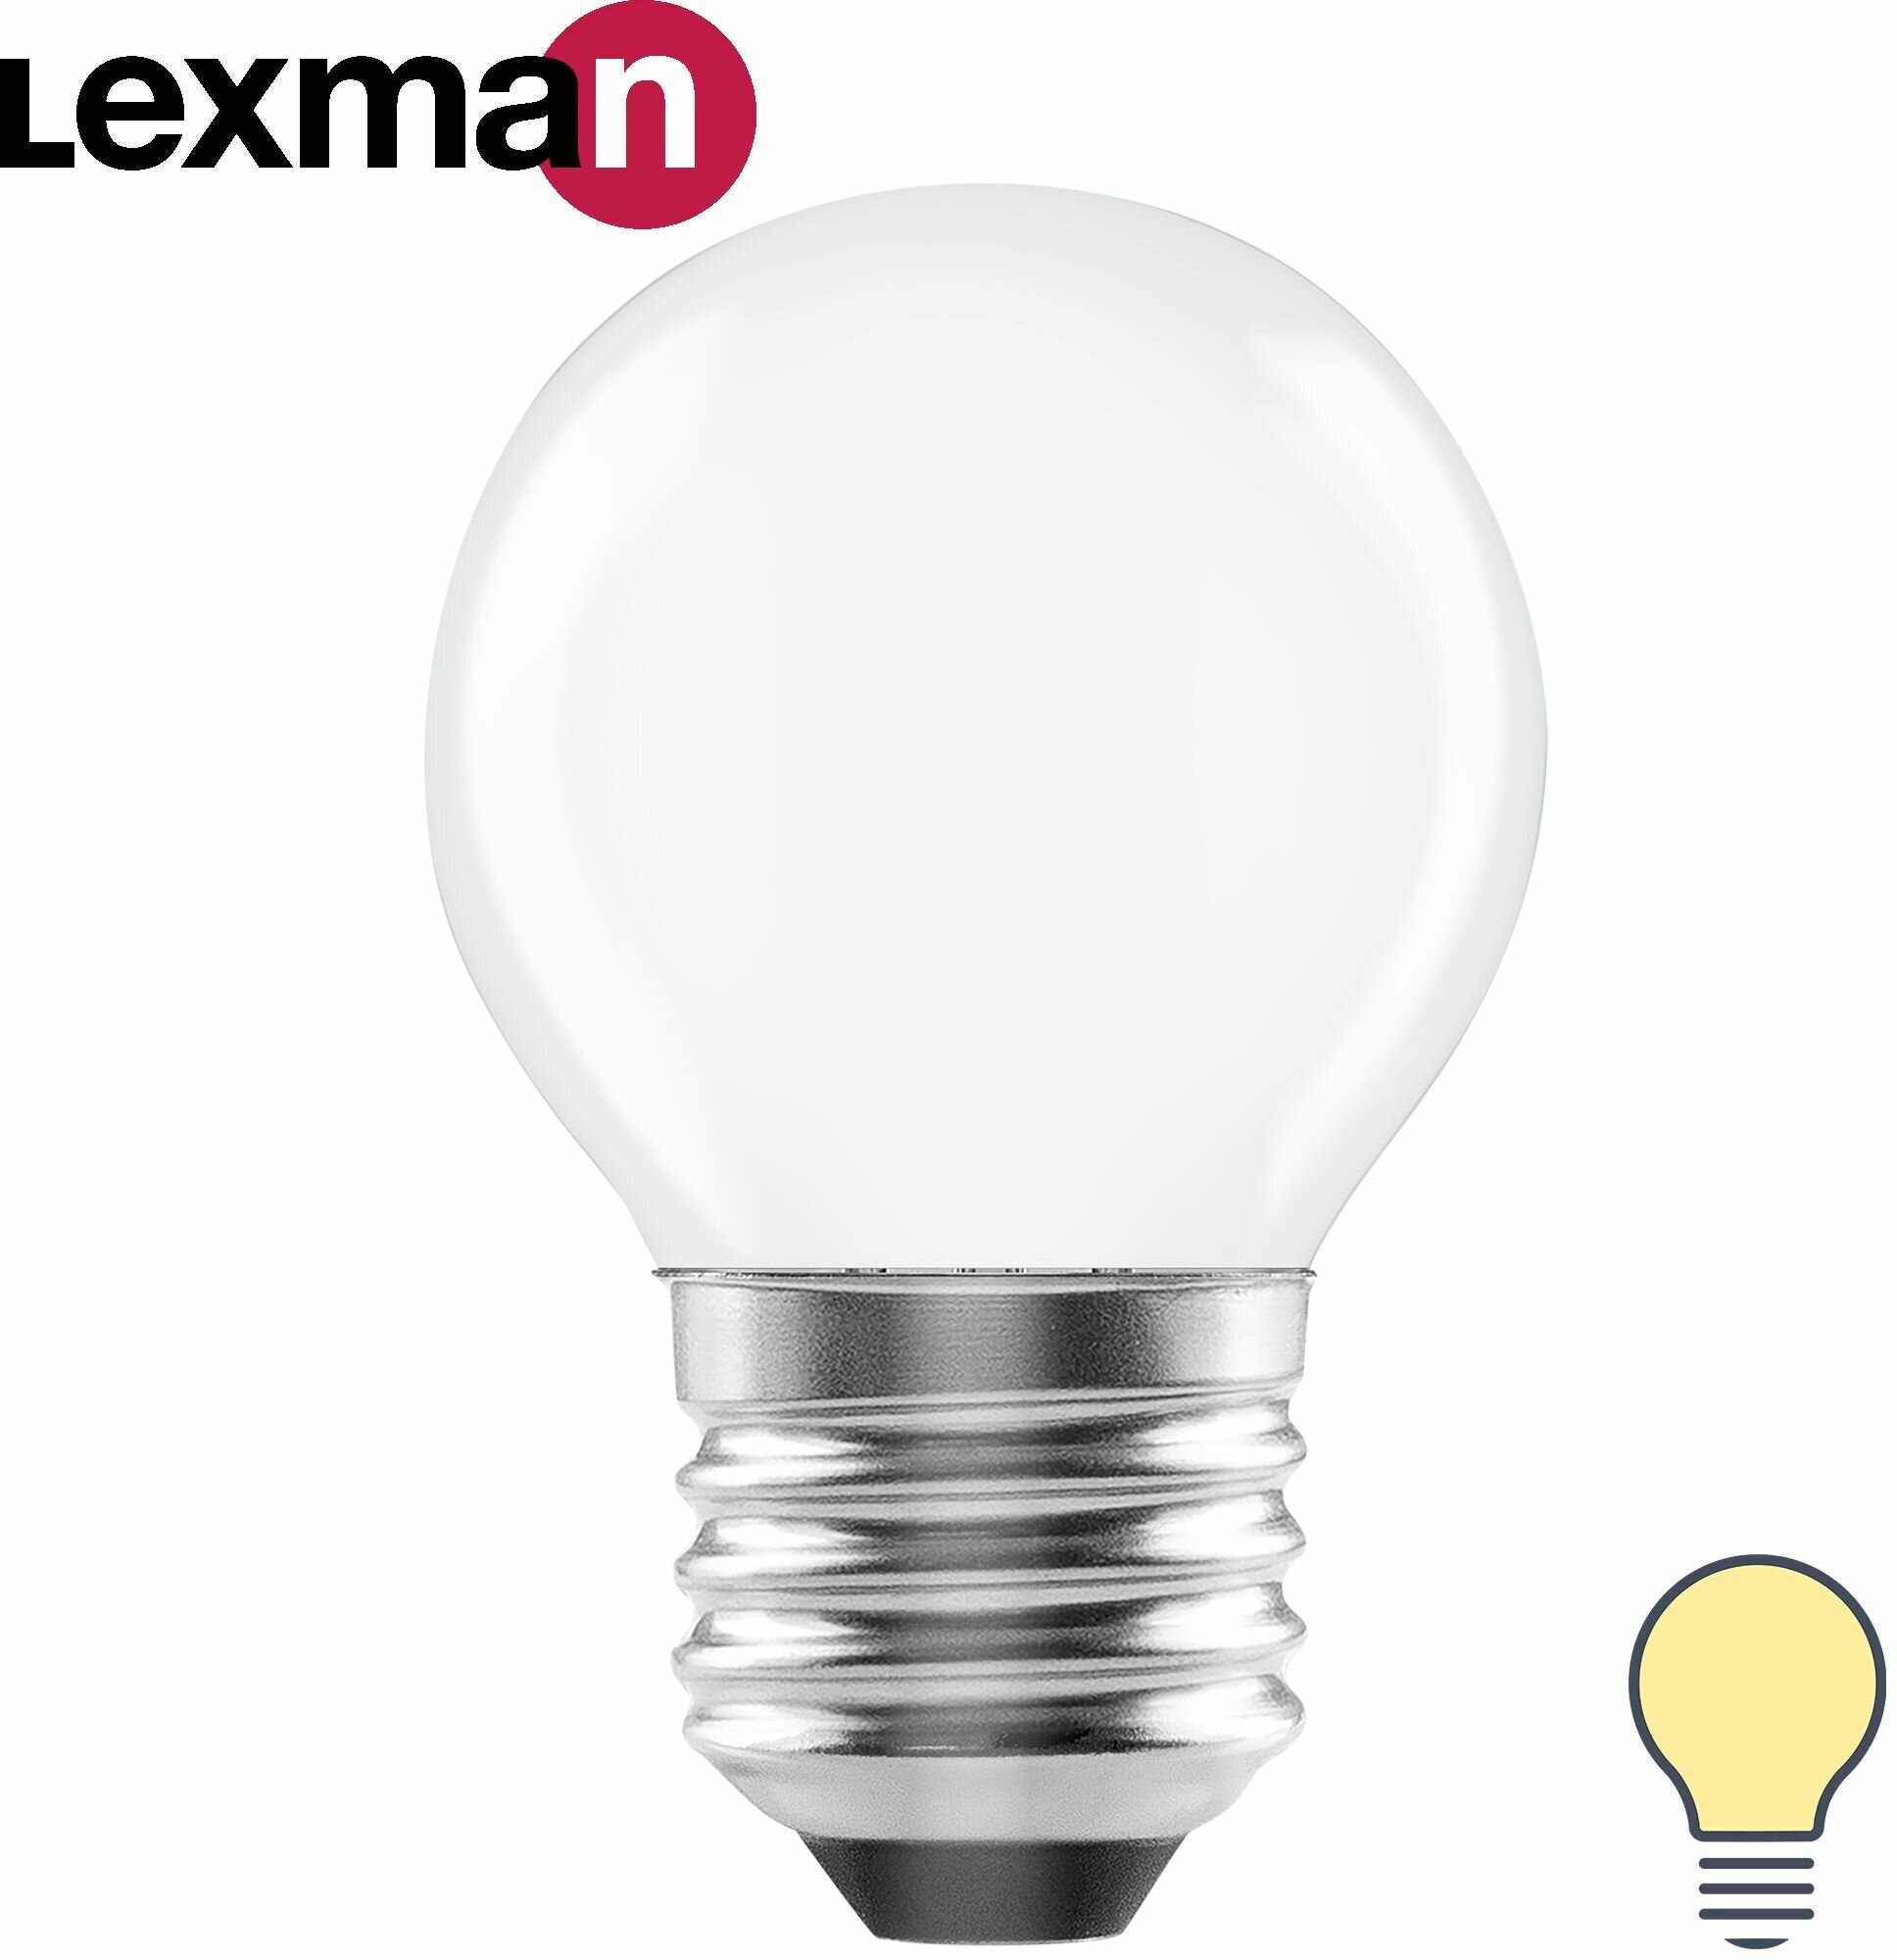 Лампа светодиодная Lexman E27 220-240 В 4 Вт шар матовая 400 лм теплый белый свет